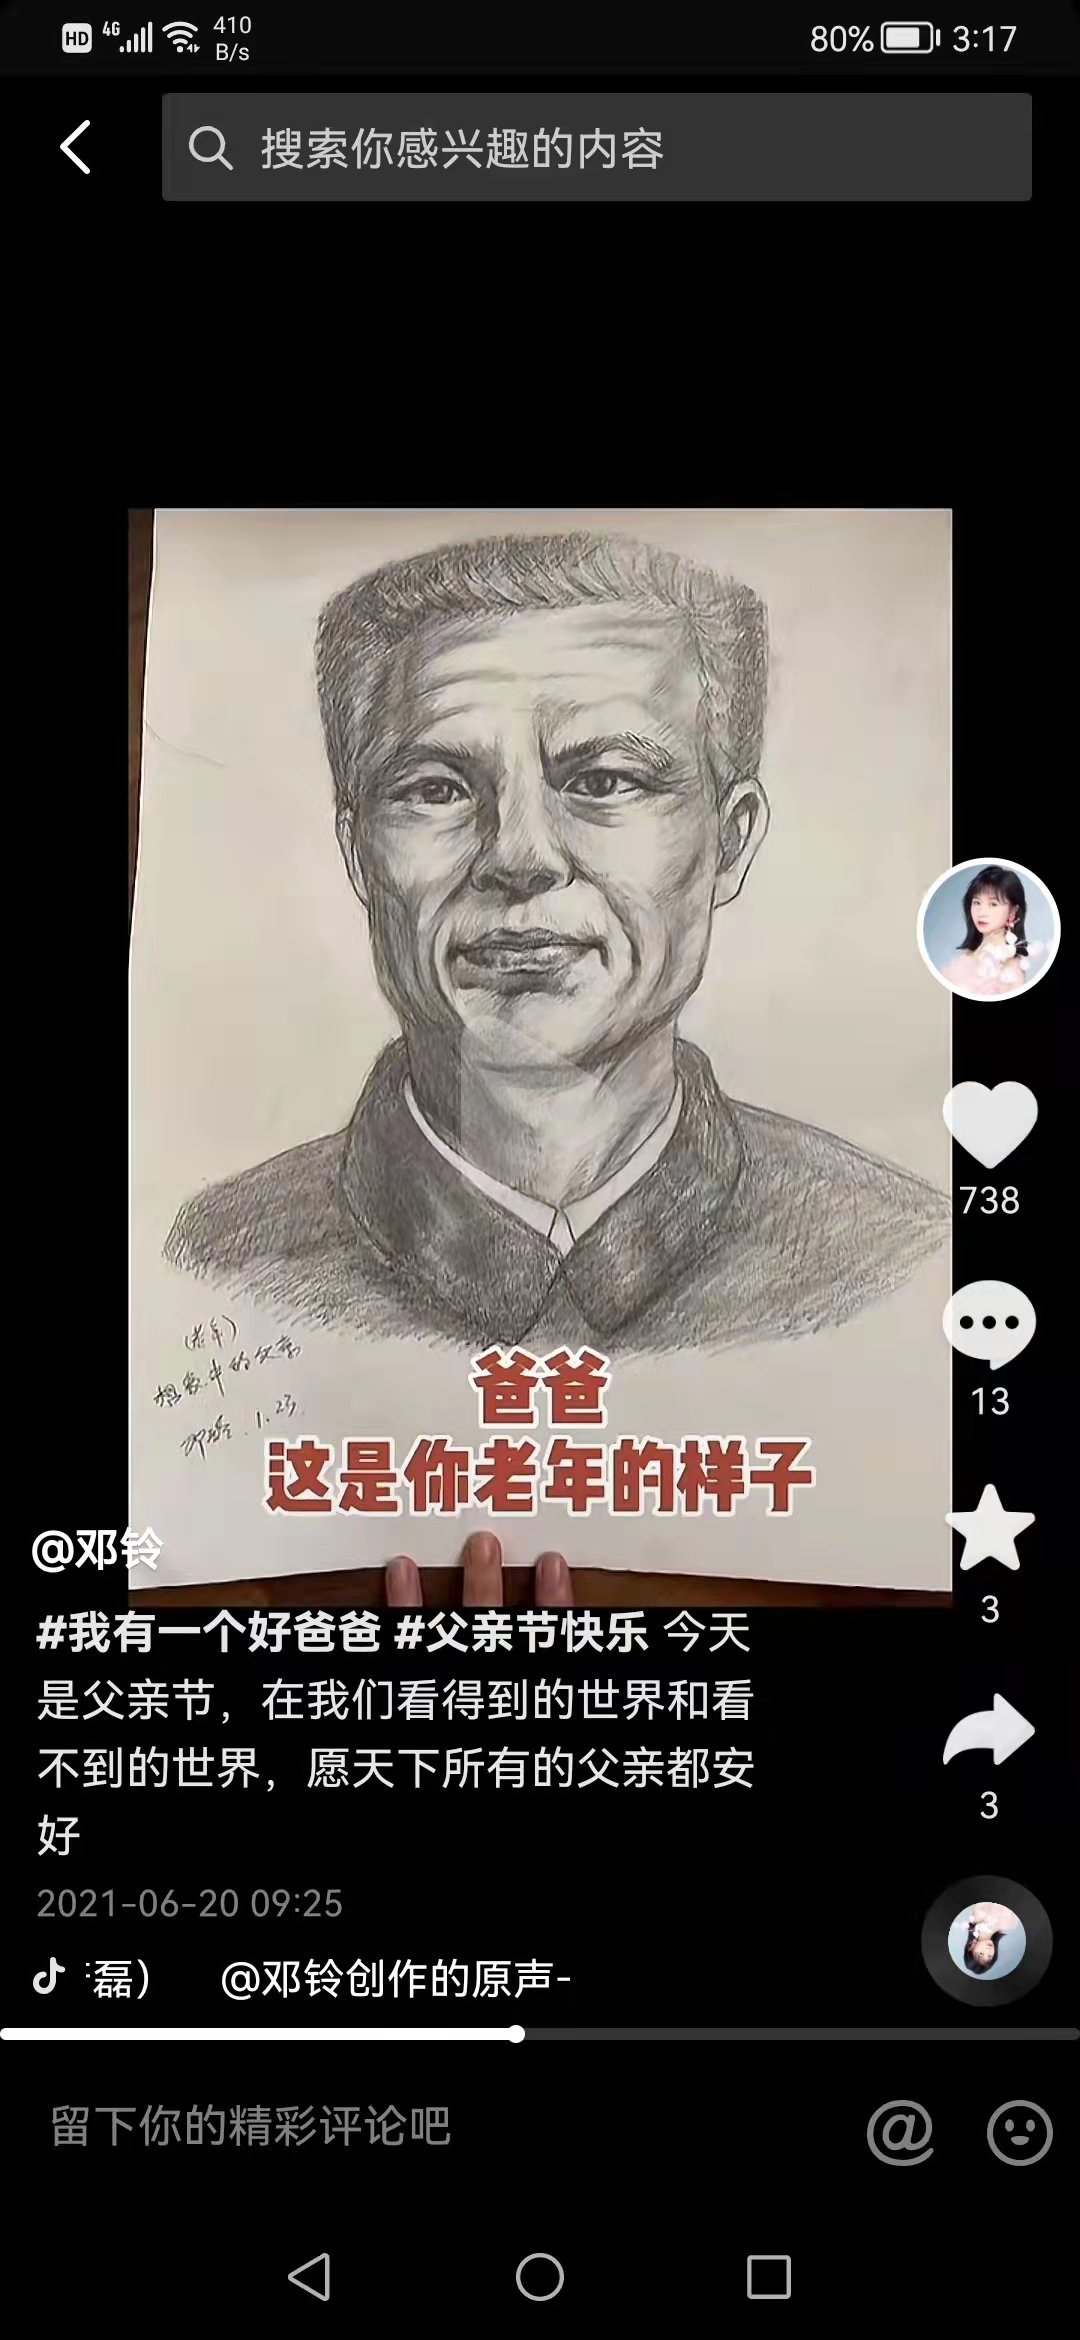 去年父亲节时
，邓铃在社交网络上发布的想象中的父亲老年画像。邓铃社交网络截图。